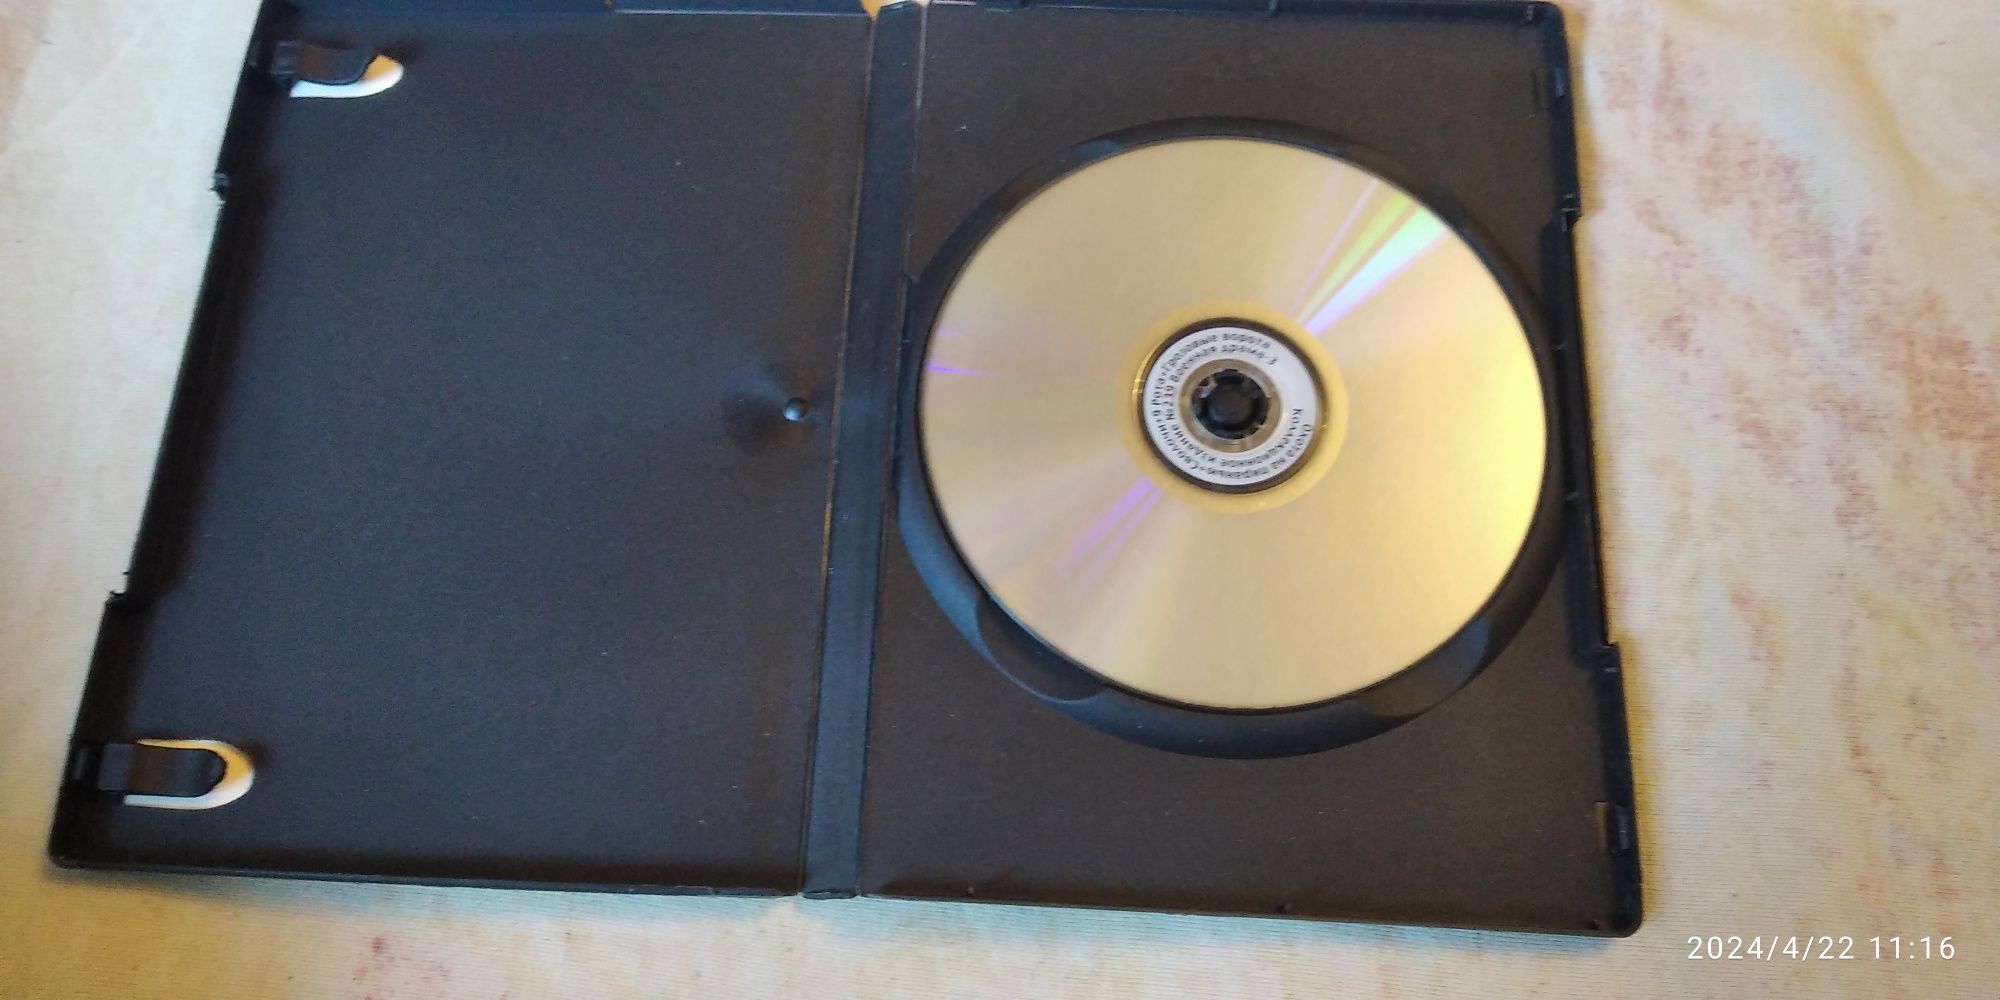 DVD диски с военными фильмами